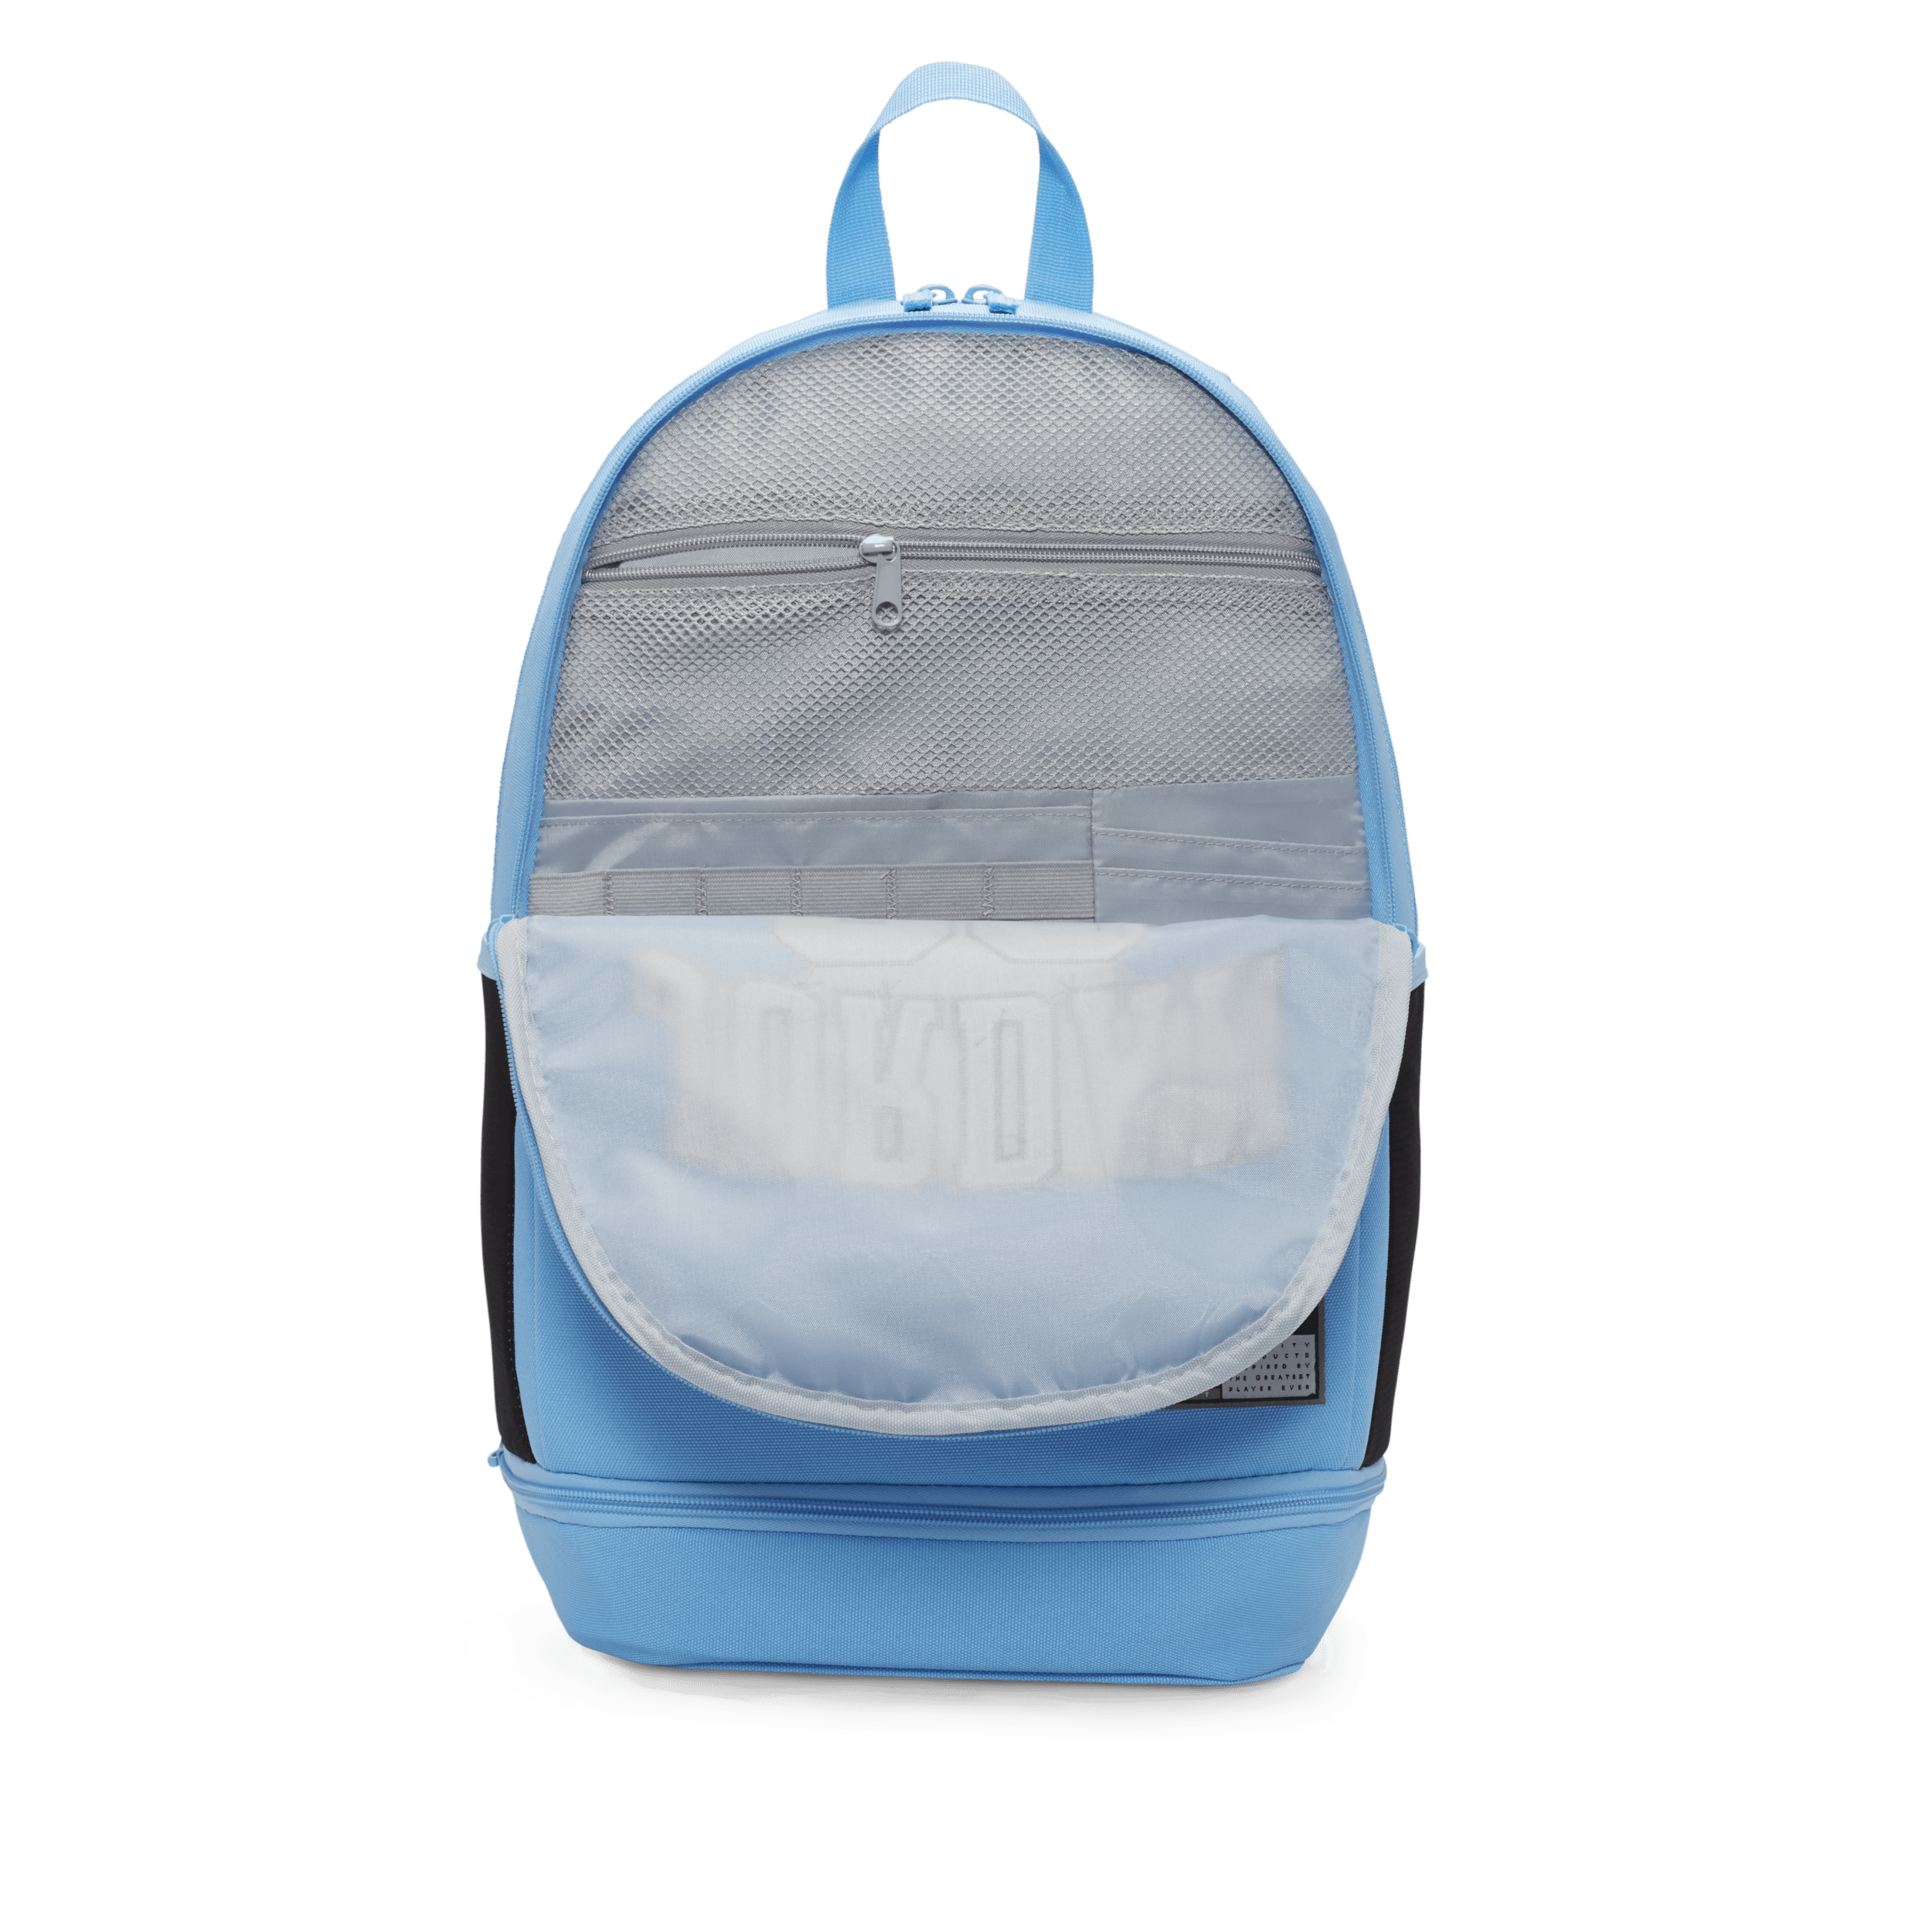 Jordan Jersey Backpack rugzak voor kids (27 liter) Blauw